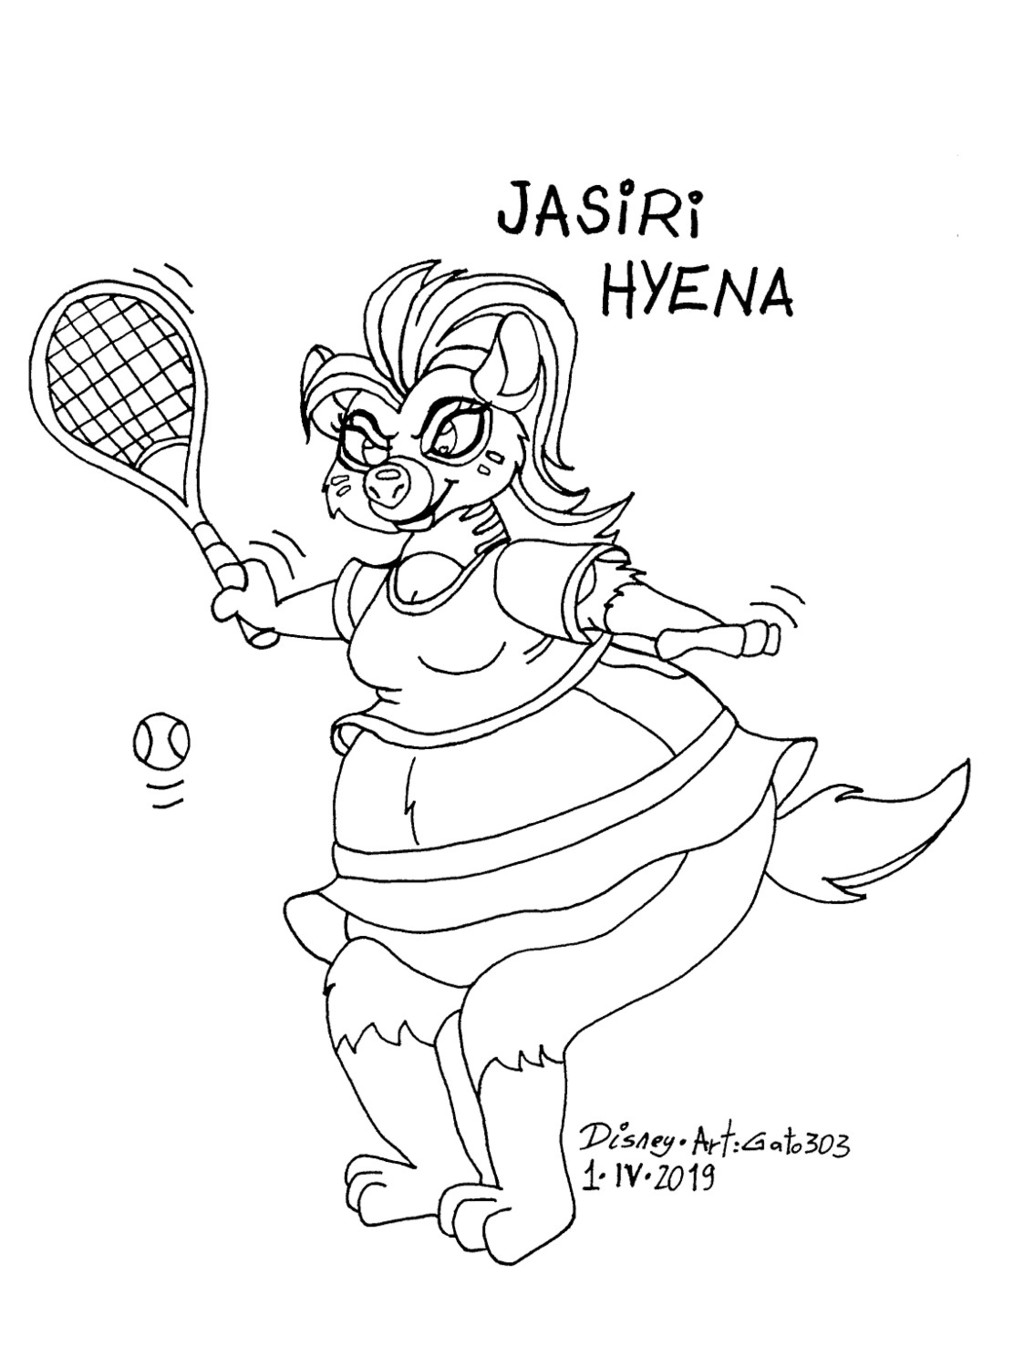 Jasiri Hyena